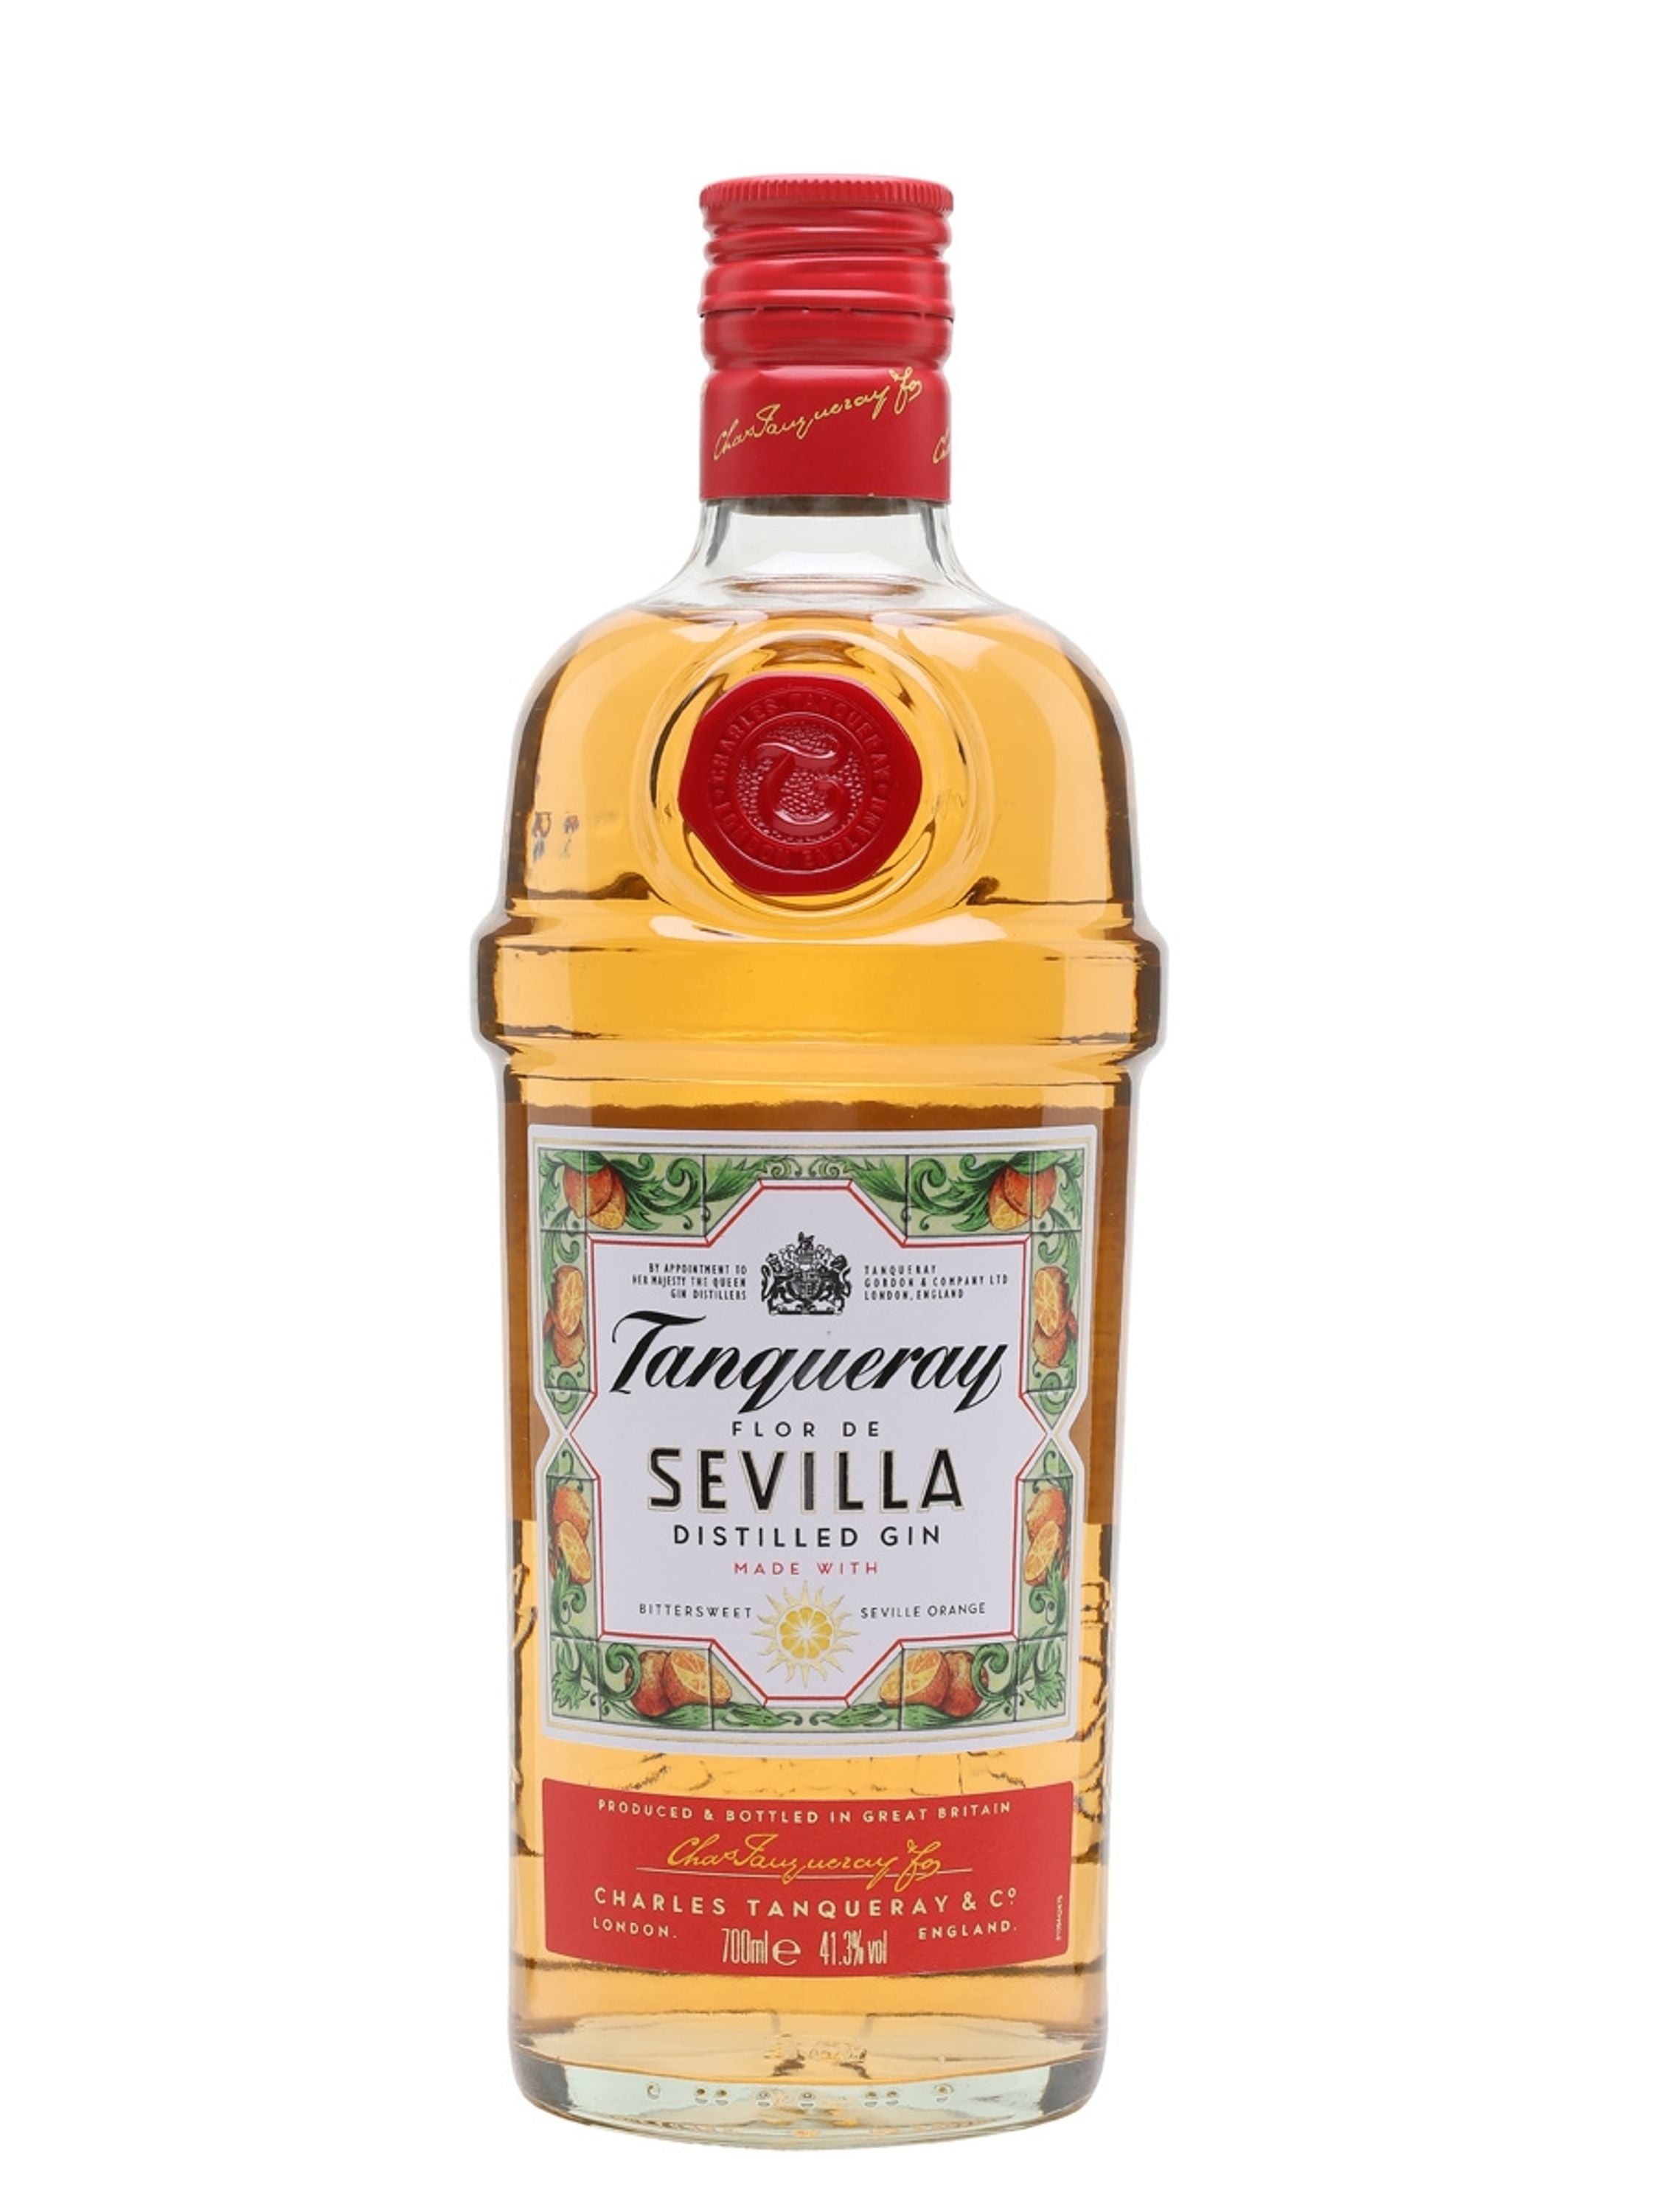 Tanqueray Flor de Sevilla Distilled Gin 0.7l, alc. 41.3% ABV, Gin England